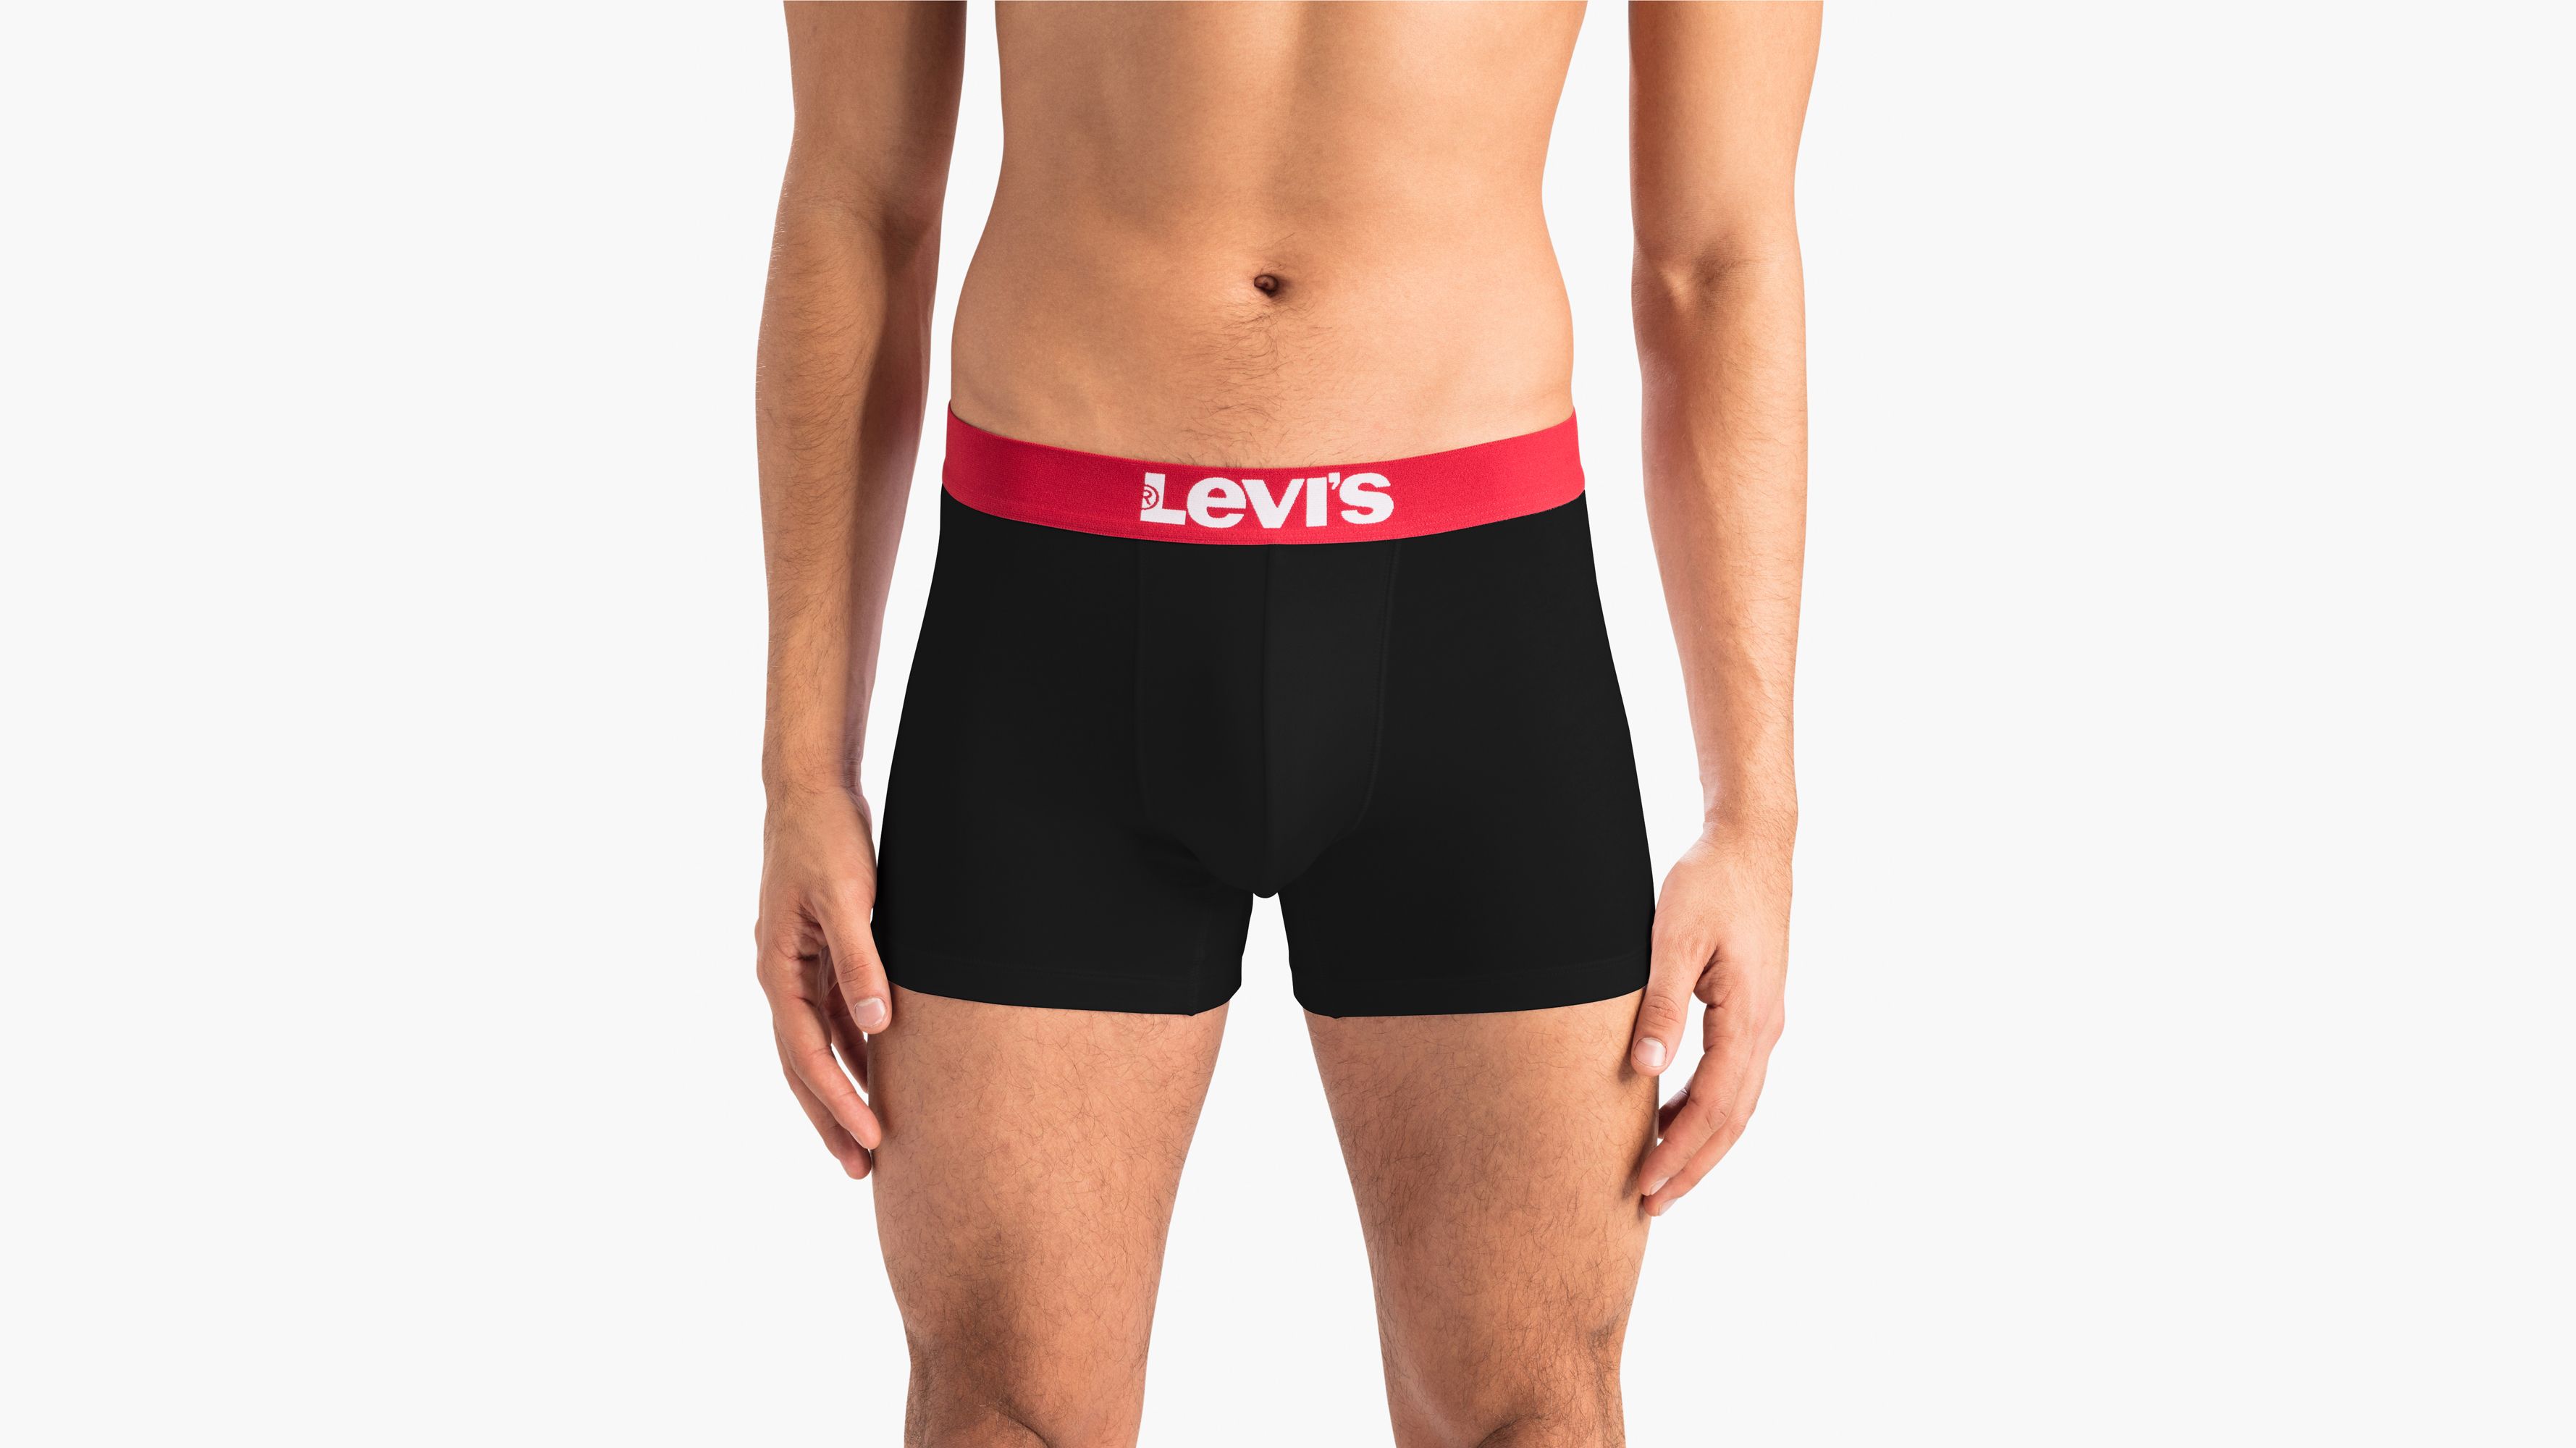 levis boxer shorts